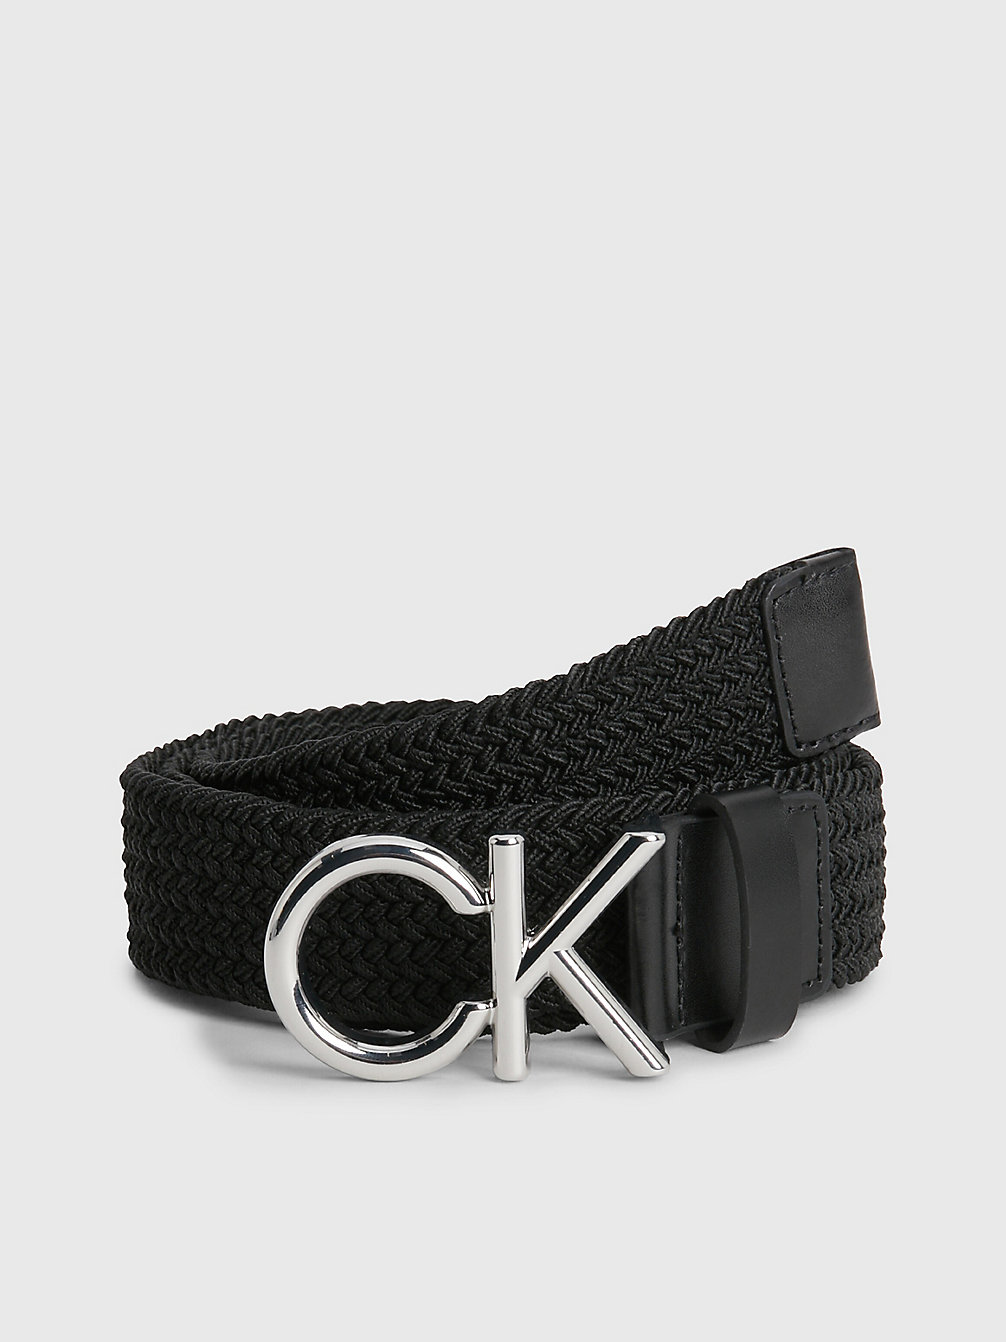 CK BLACK Braided Belt undefined men Calvin Klein